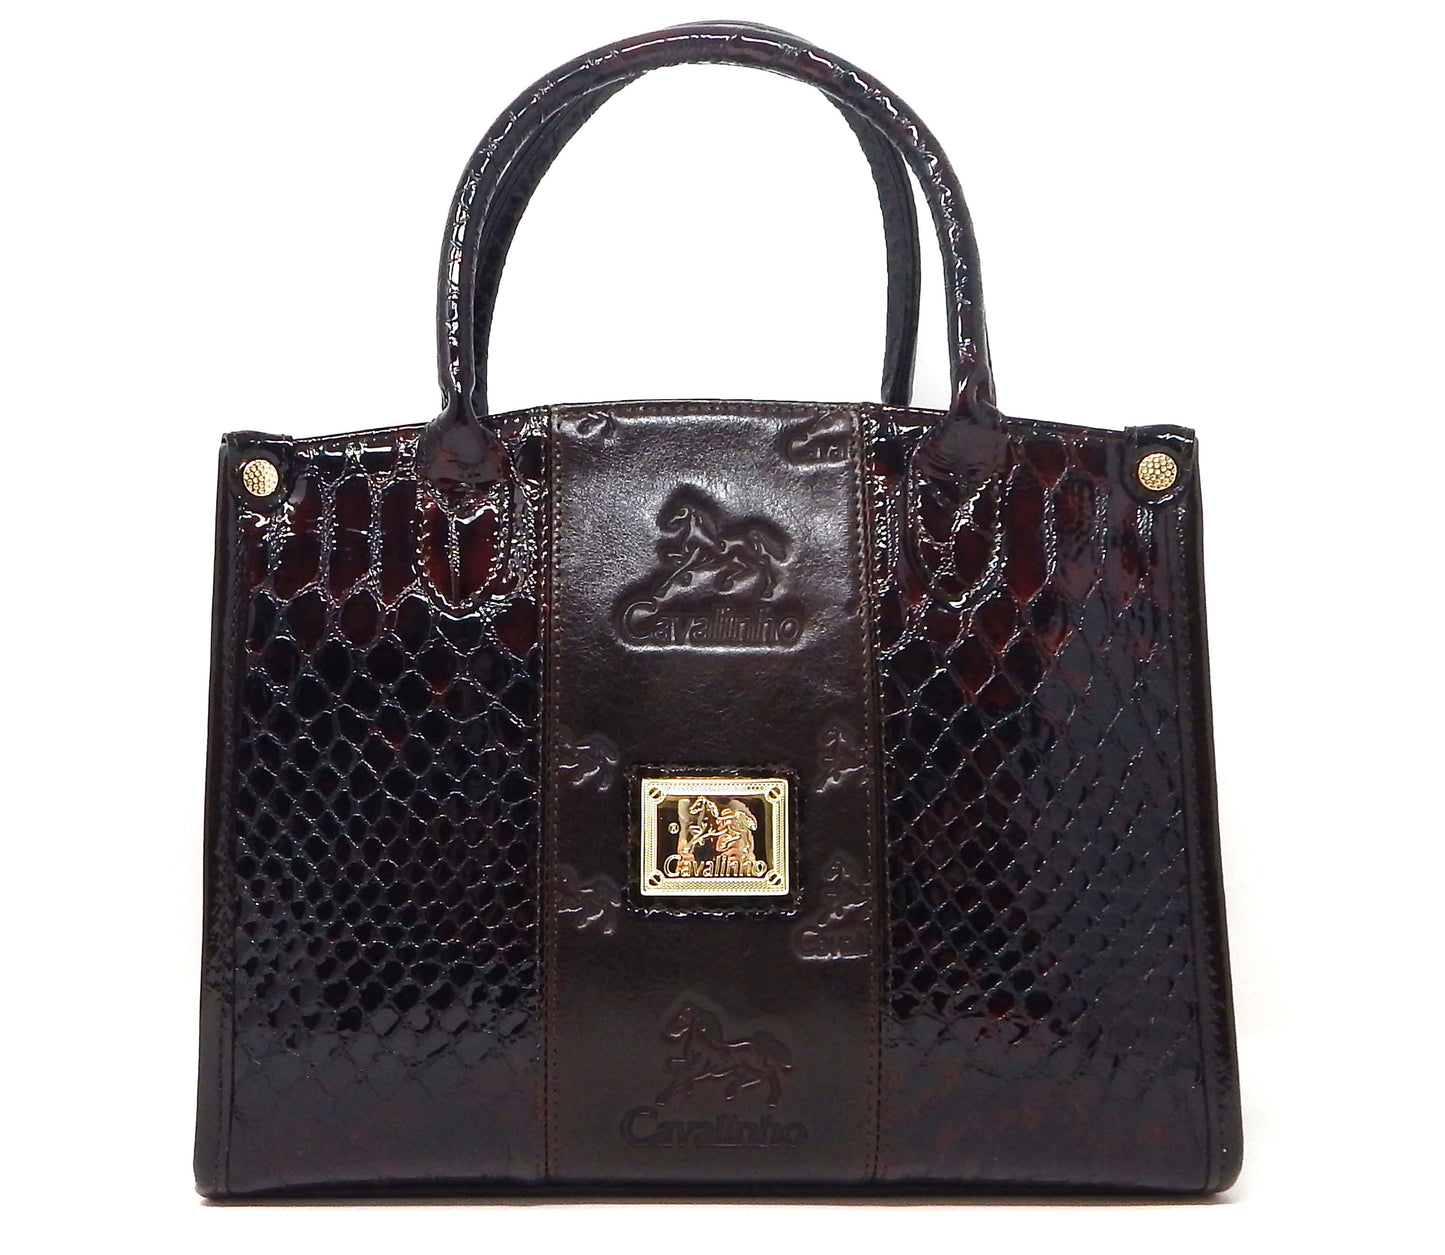 Cavalinho Honor Handbag - Brown - 18190480.02.99_1